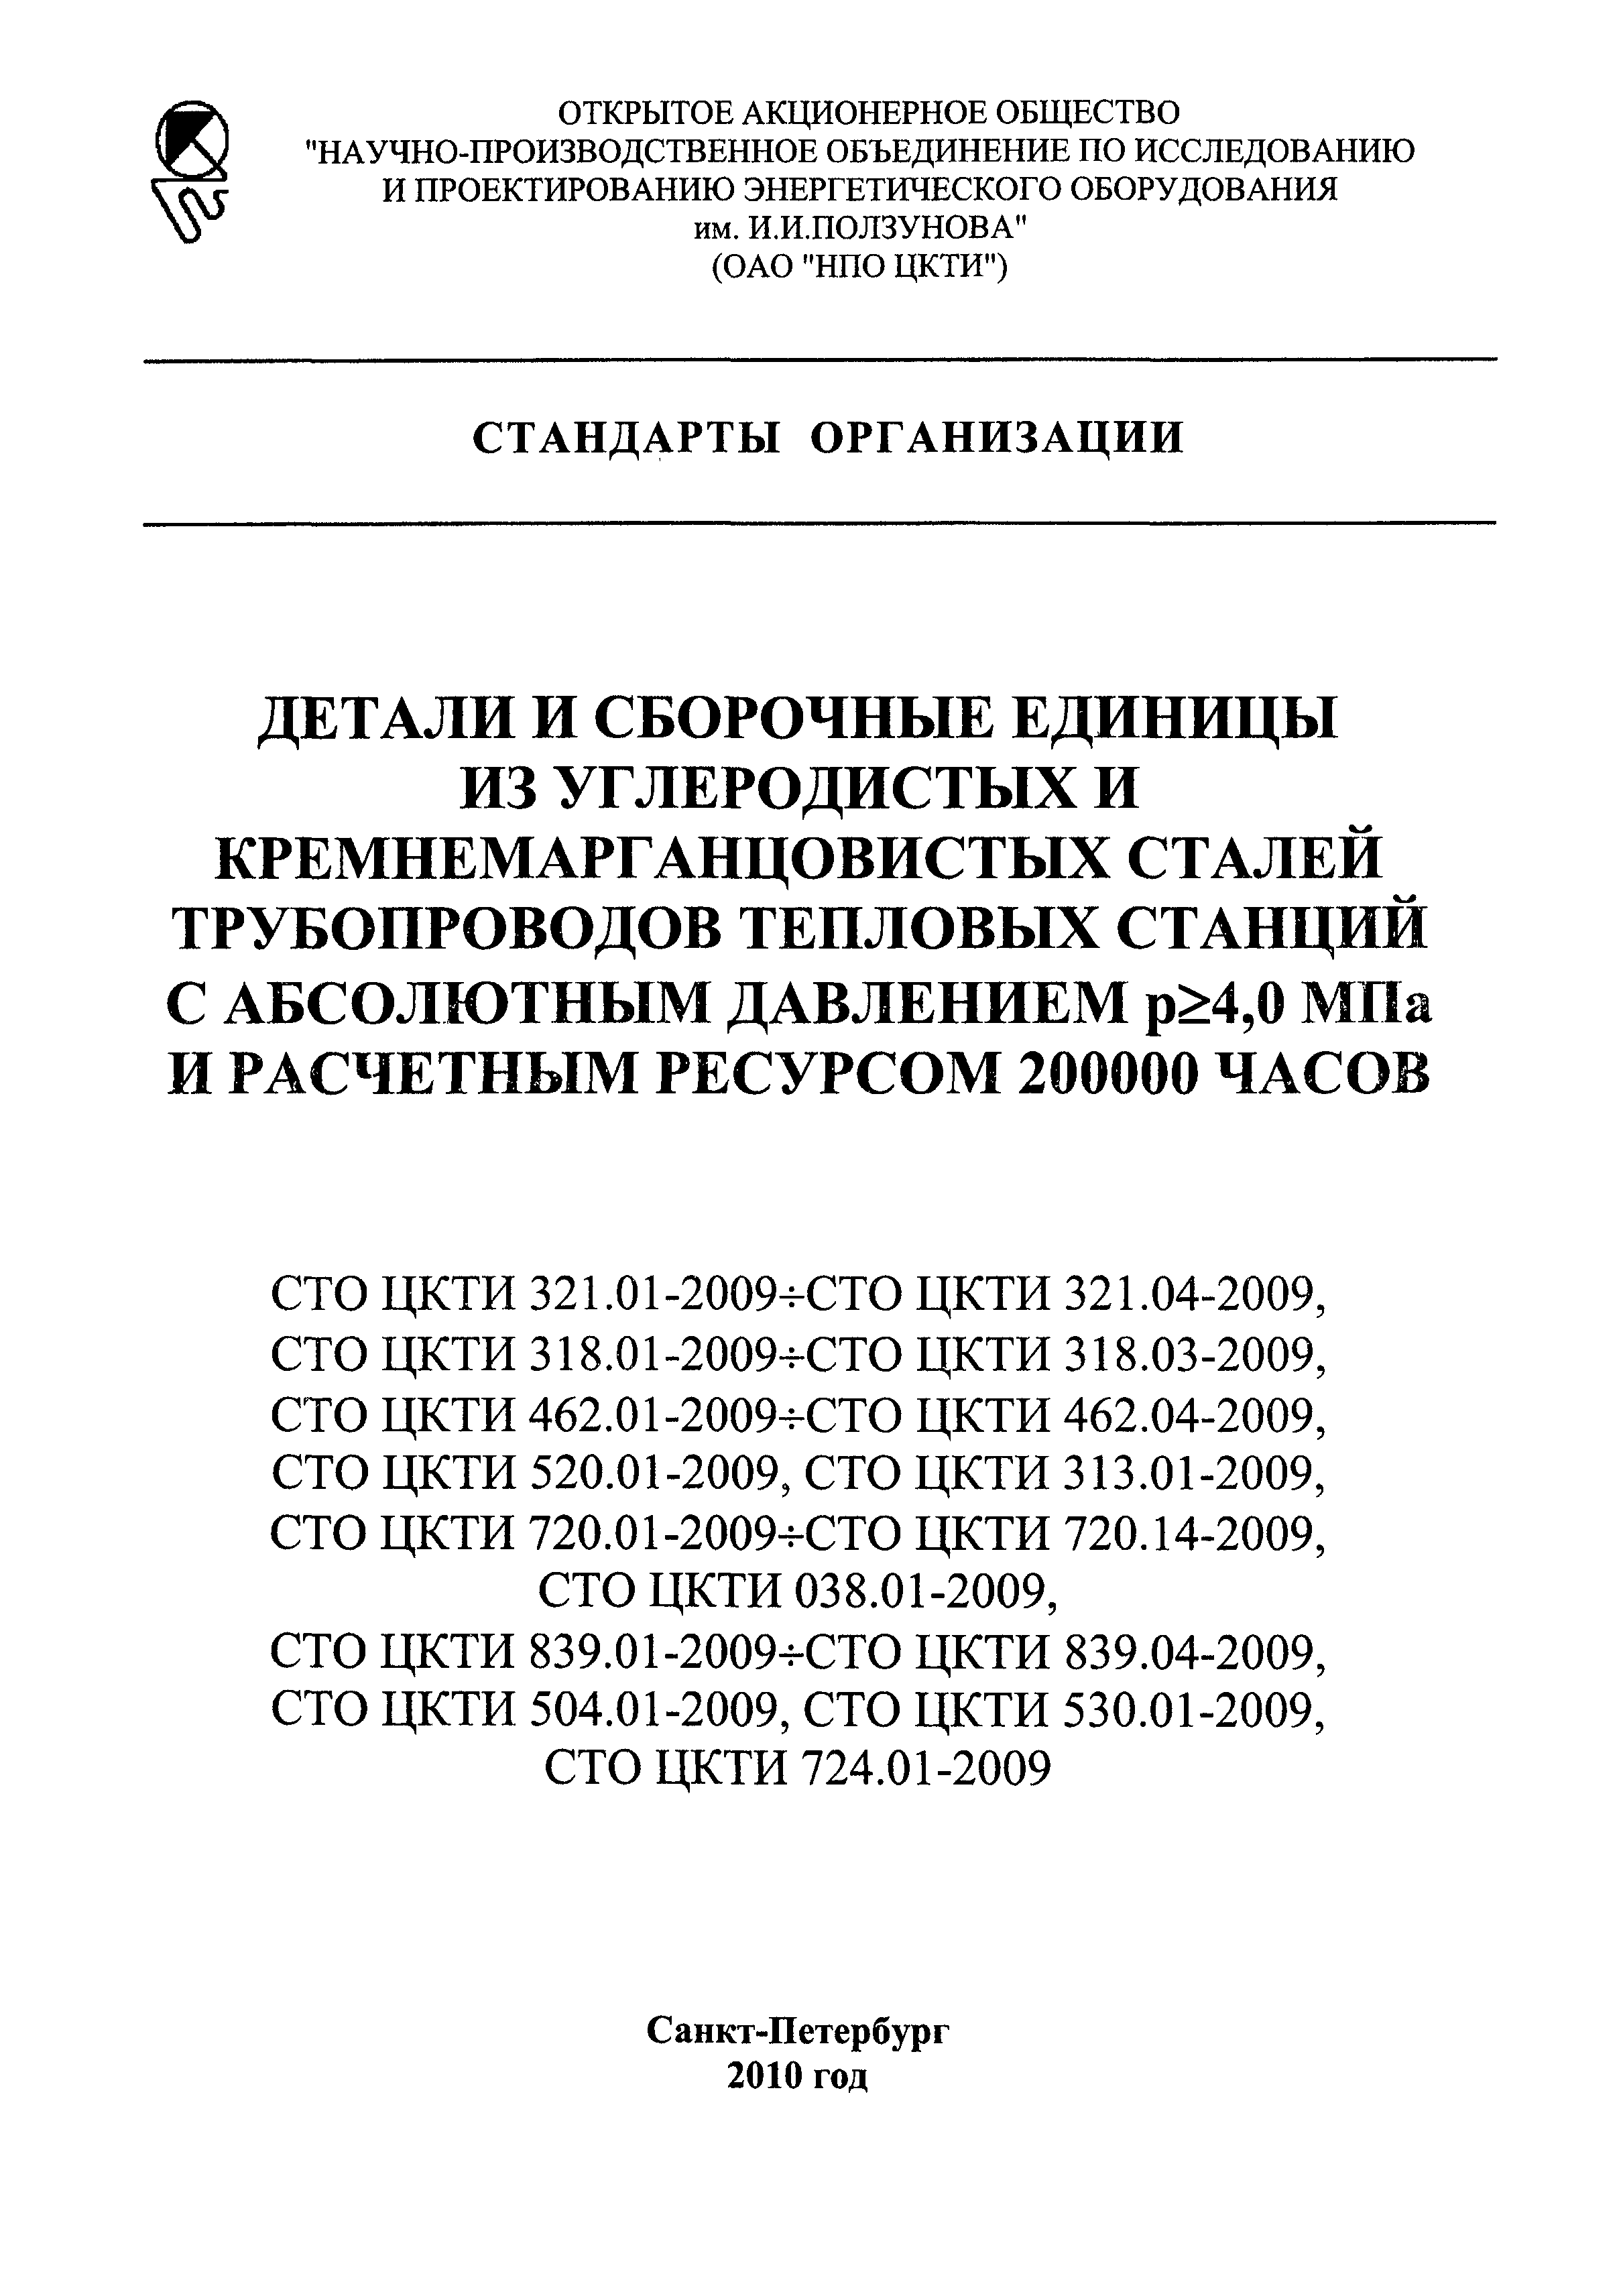 СТО ЦКТИ 724.01-2009